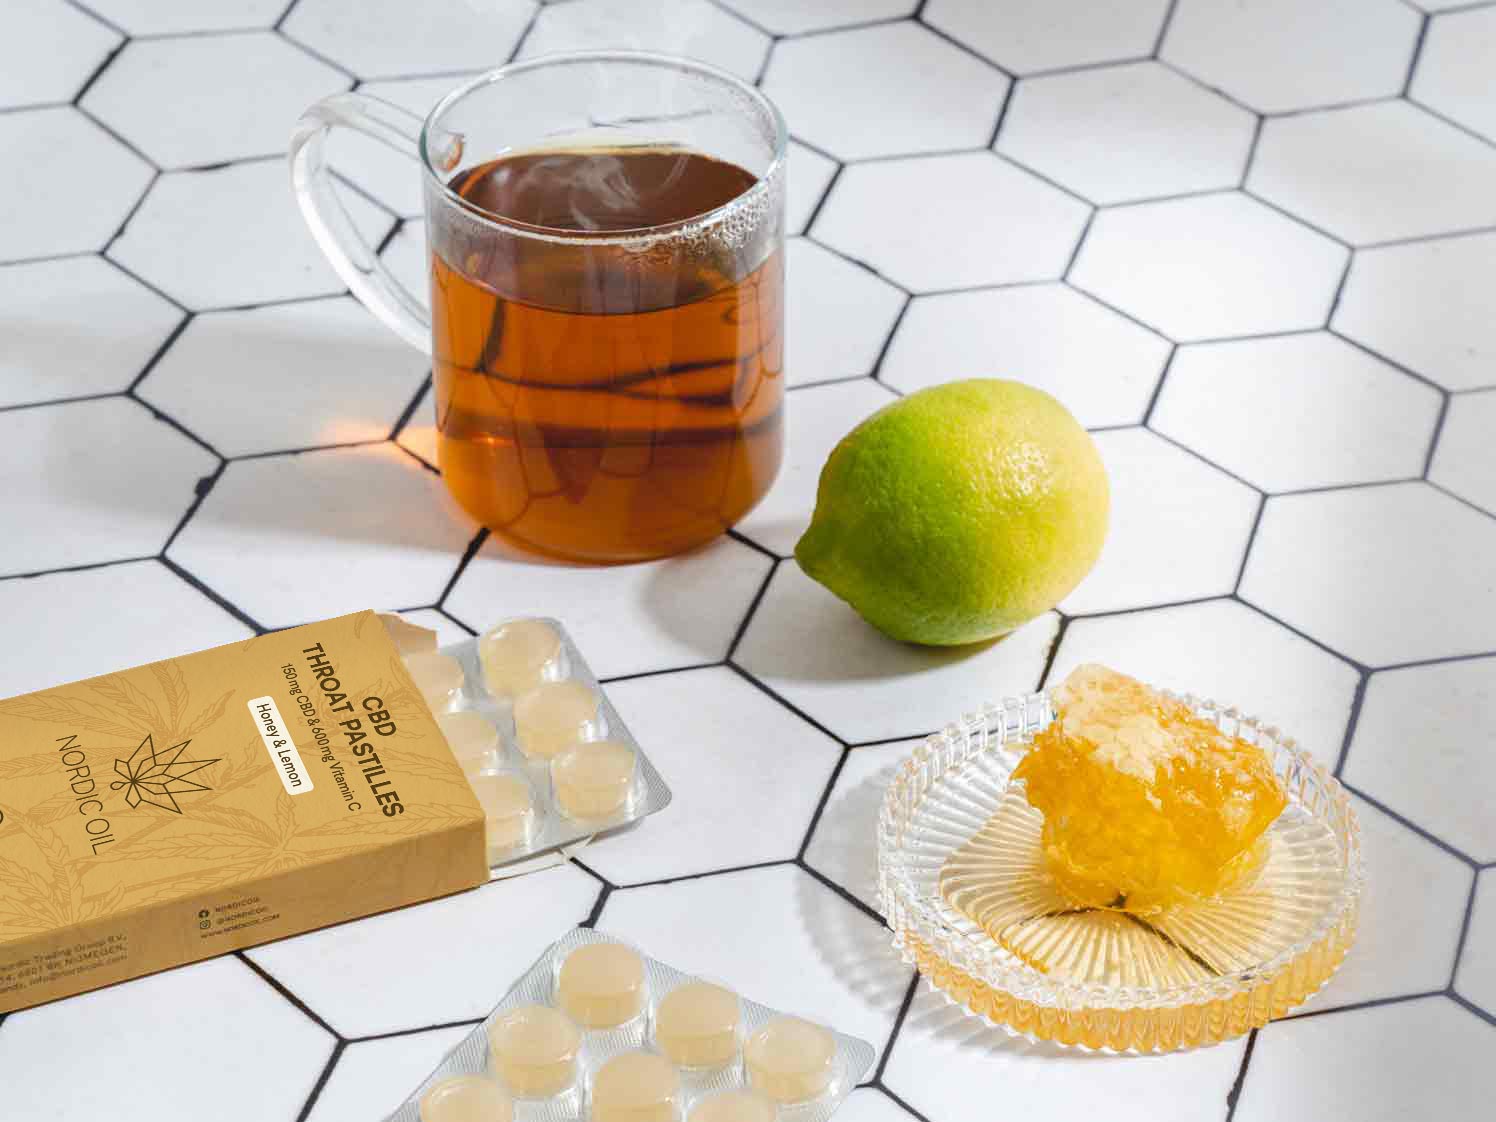 Un vaso de té junto a una lima, miel y las pastillas para la garganta CBD.